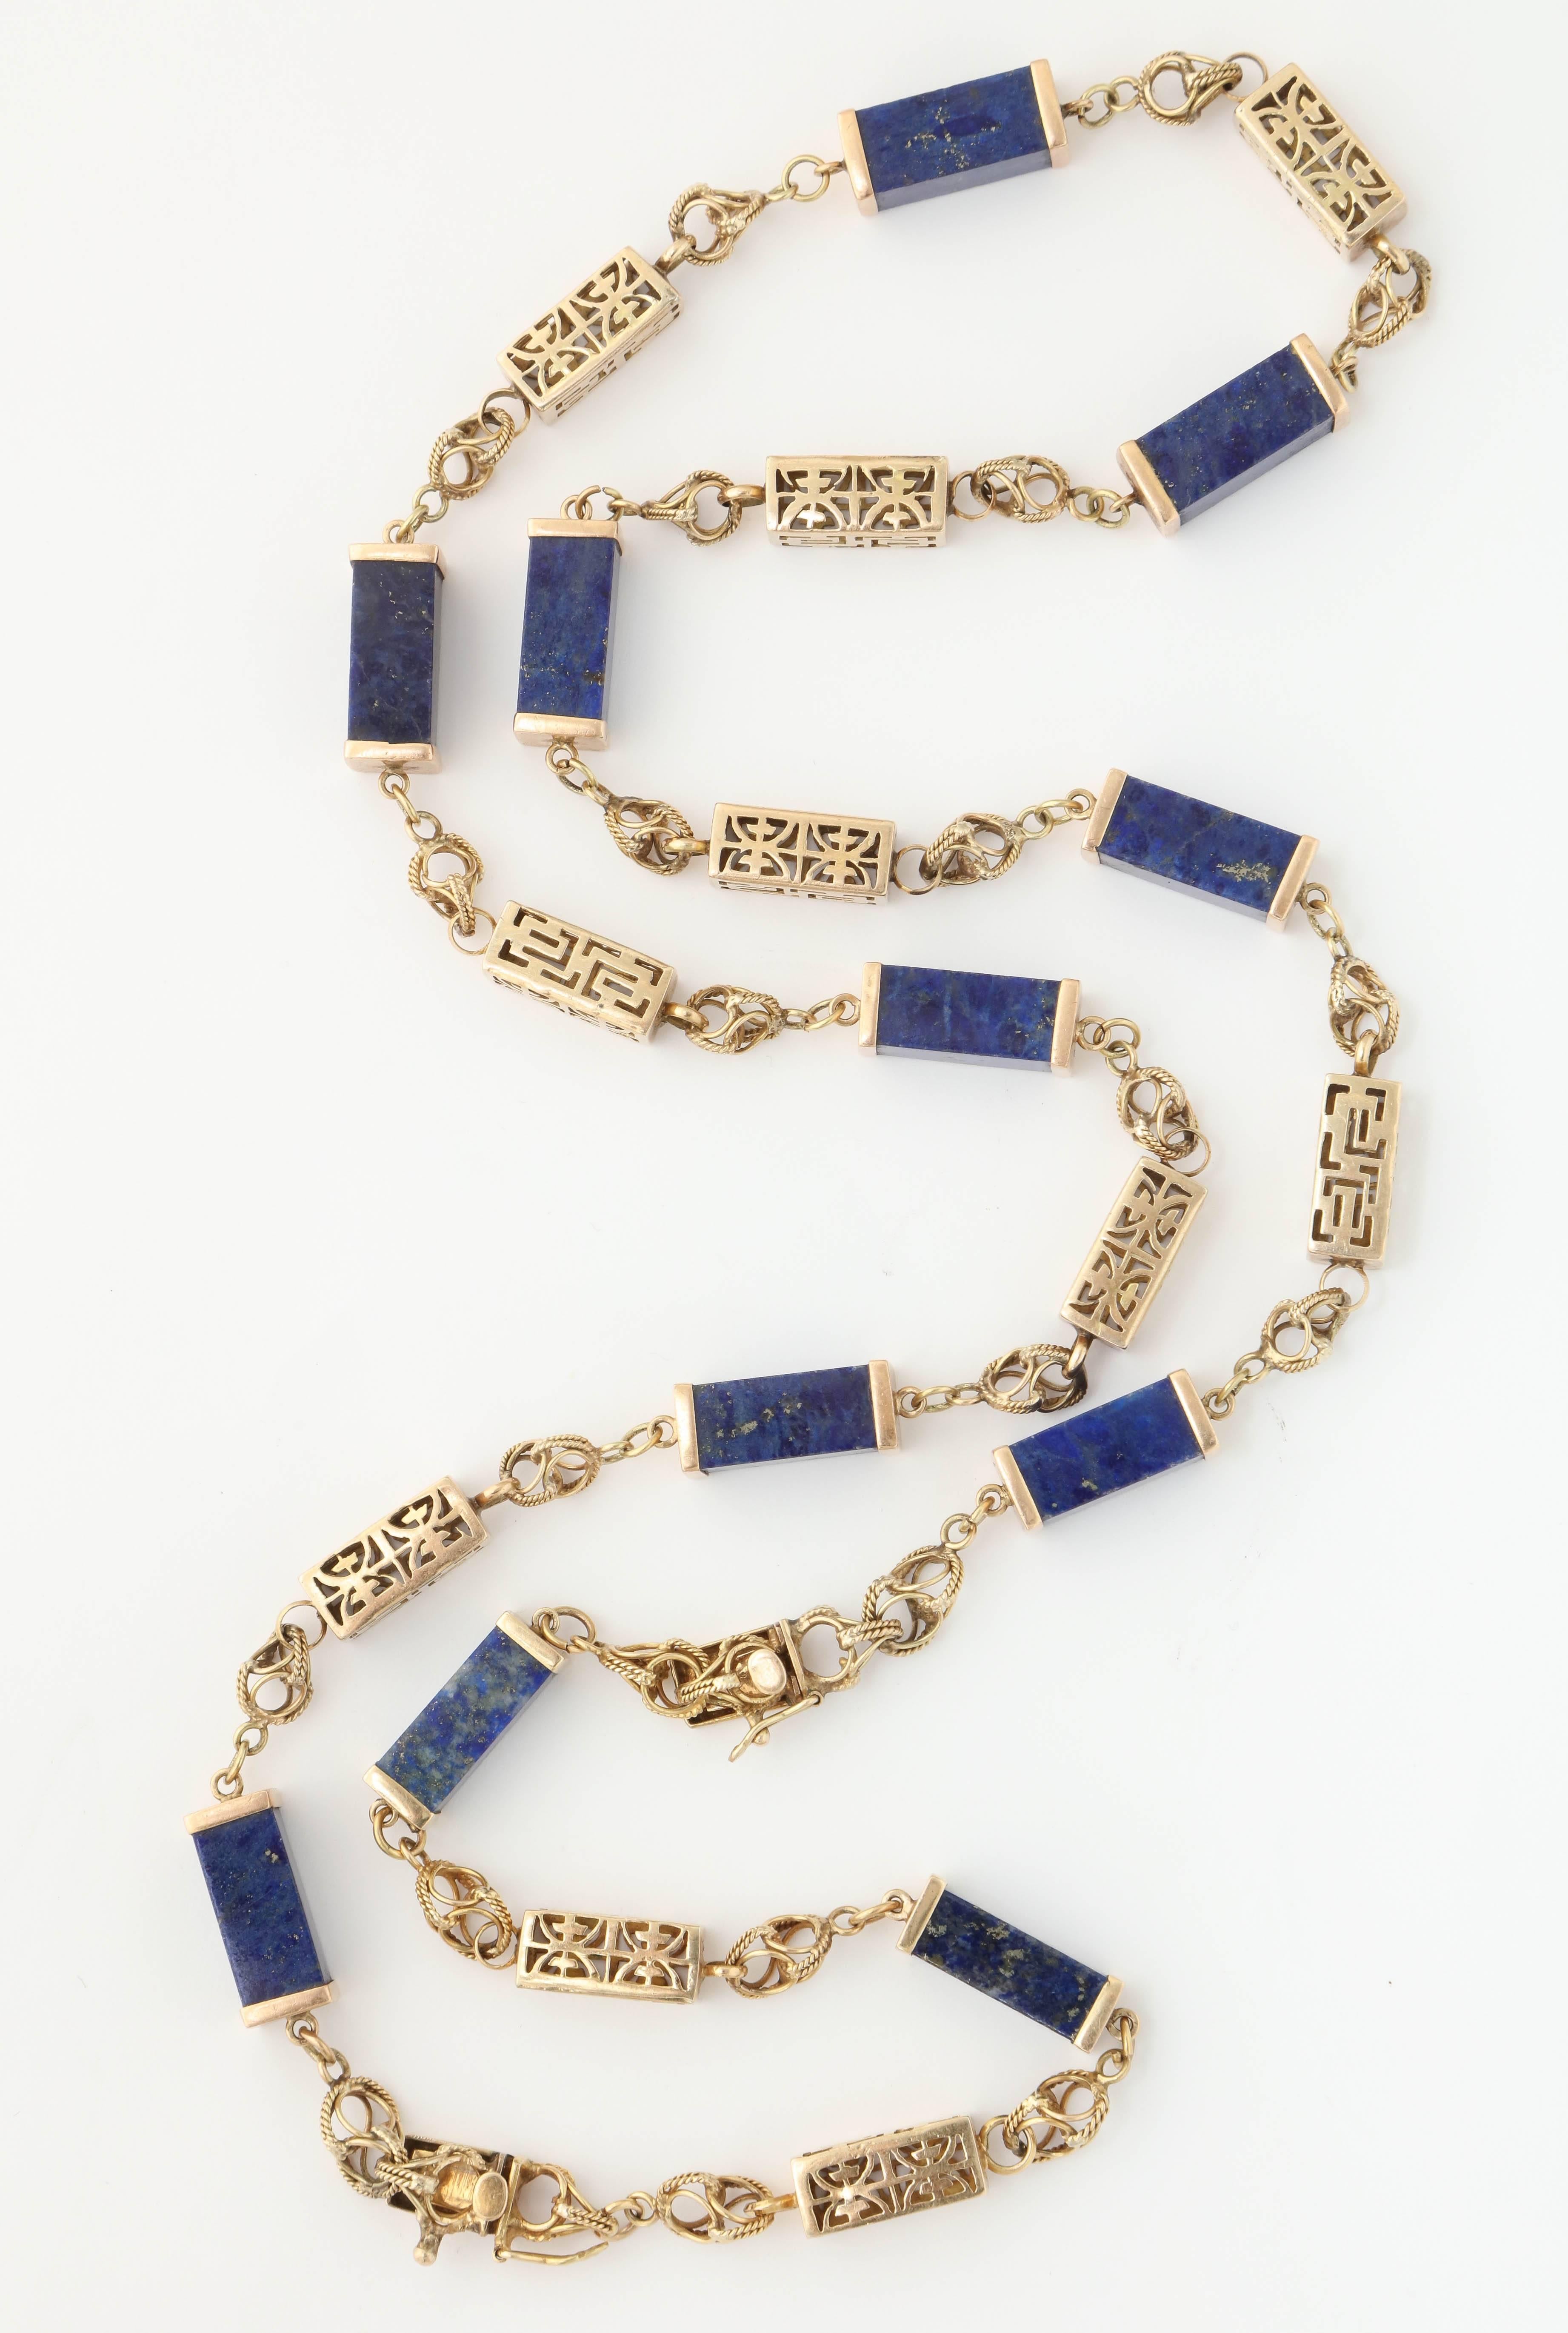 Women's 1950s Lapis Lazuli Gold Necklace Bracelet Long Chain Combination 